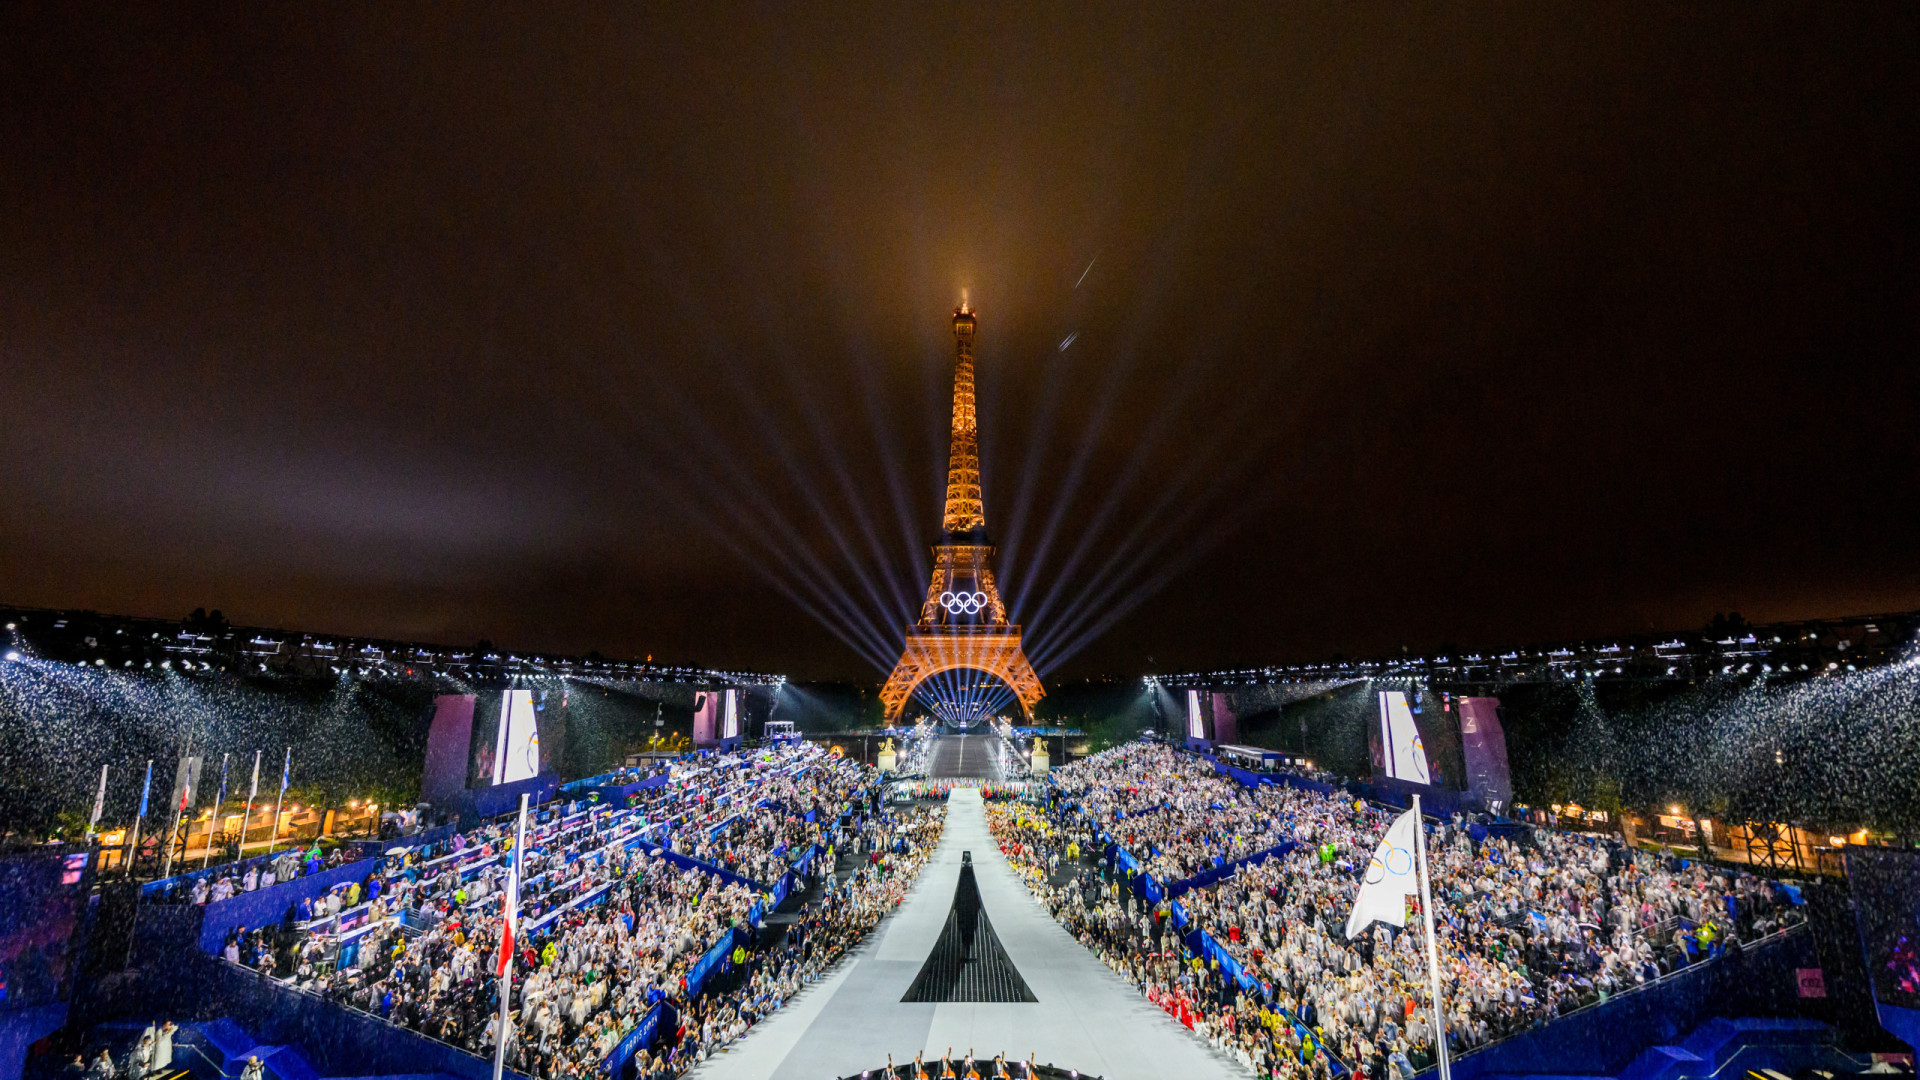 'Oh là là', As imagens da cerimónia de abertura dos Jogos Olímpicos